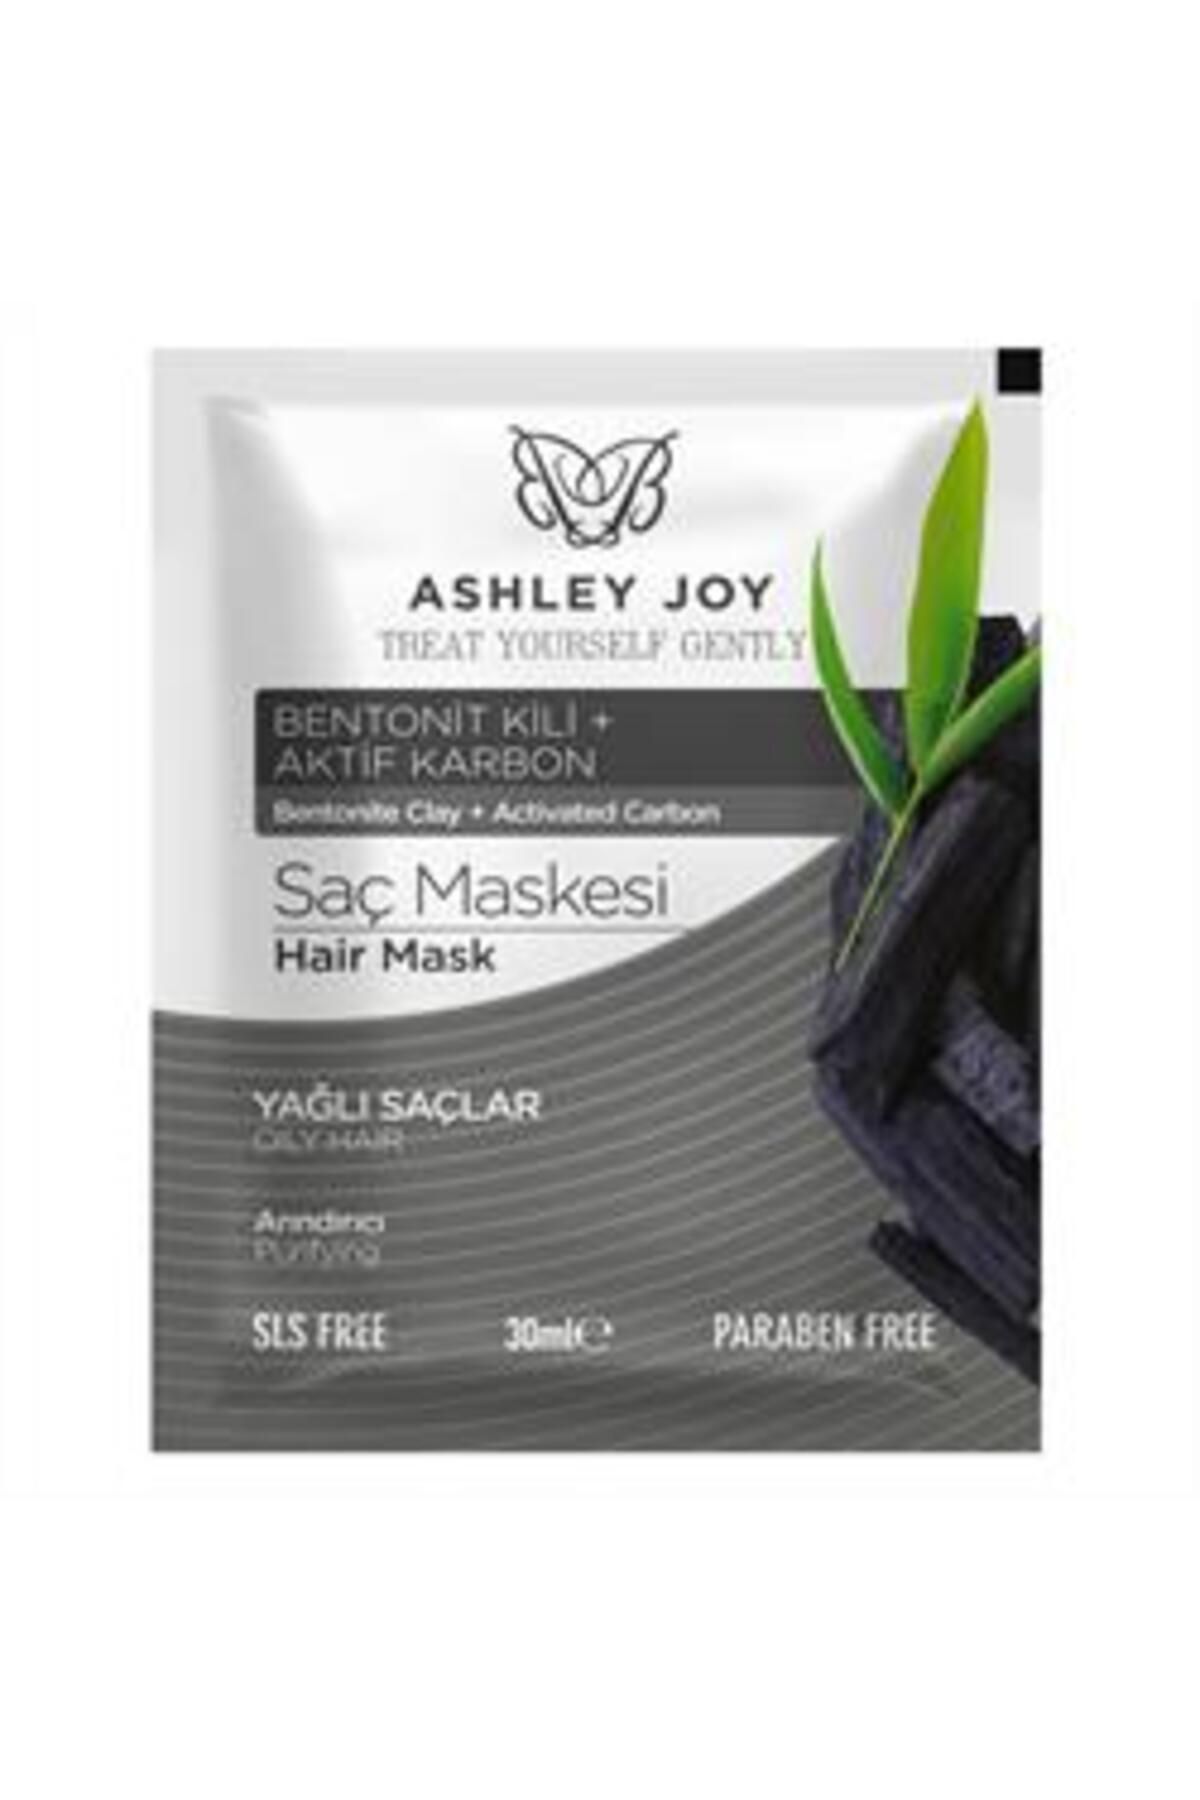 Ashley Joy Saç Maskesi Arındırıcı 30ml ( 1 ADET )